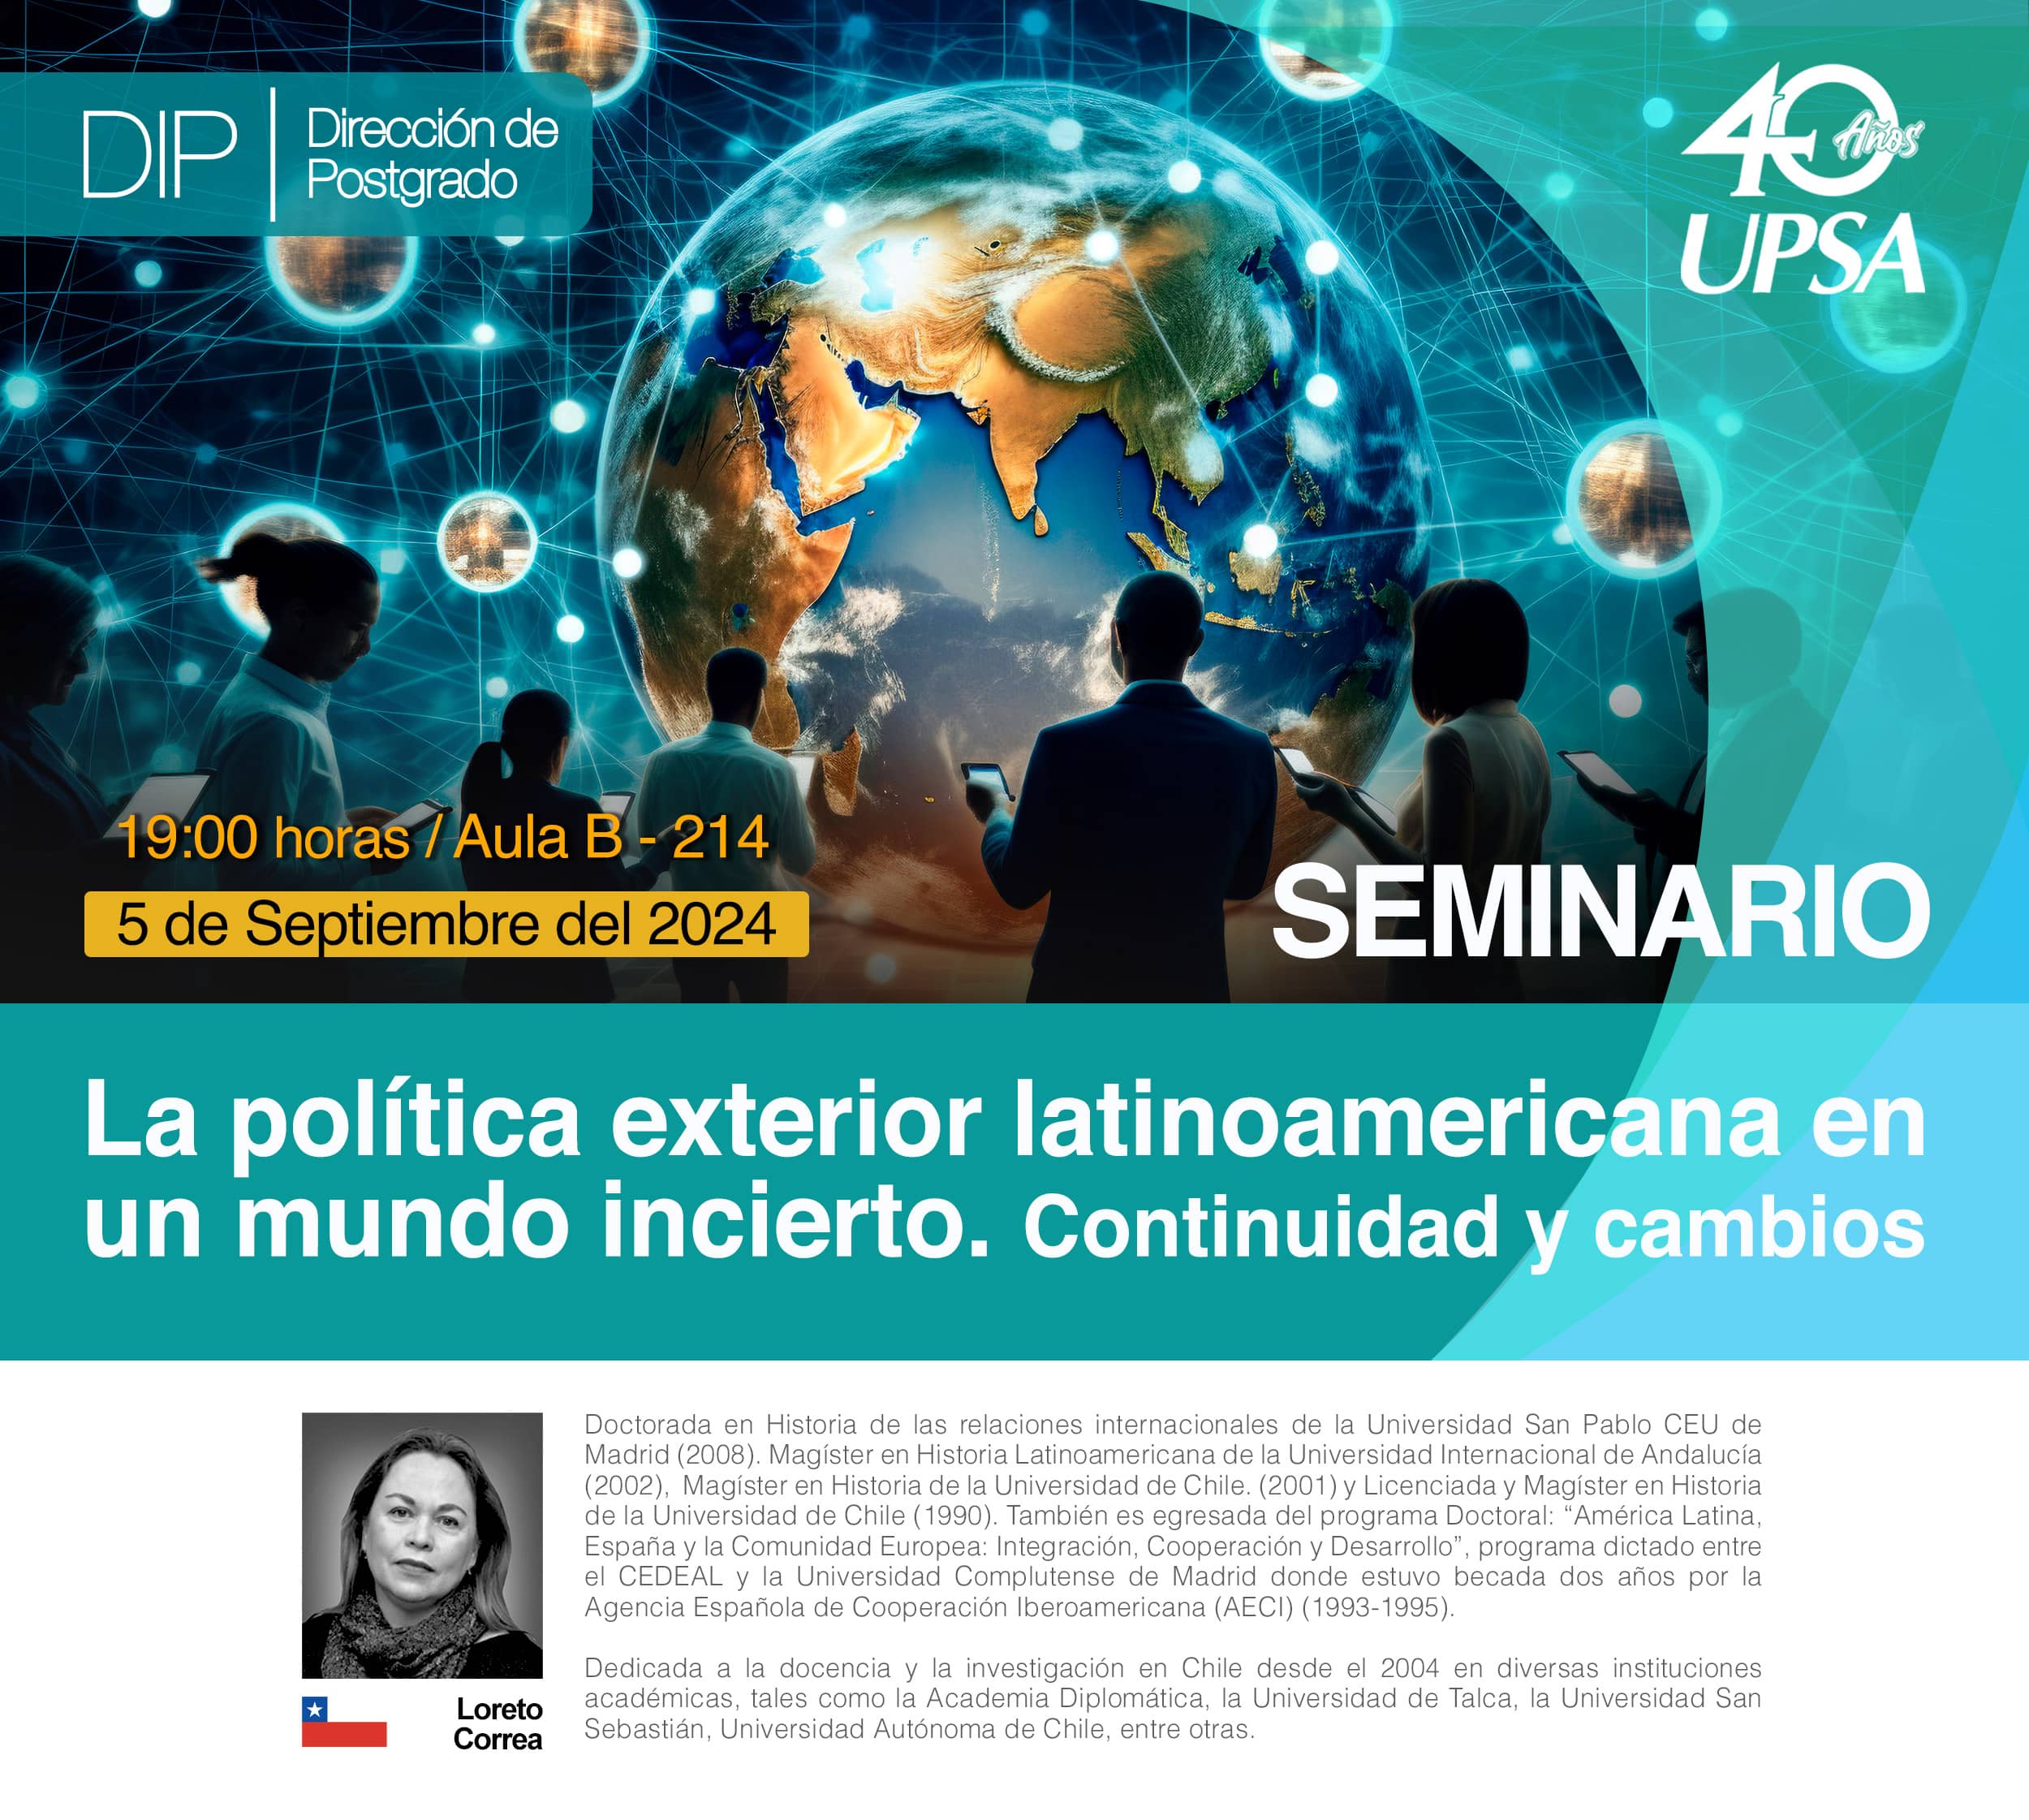 La política exterior latinoamericana en un mundo incierto. Continuidad y cambios